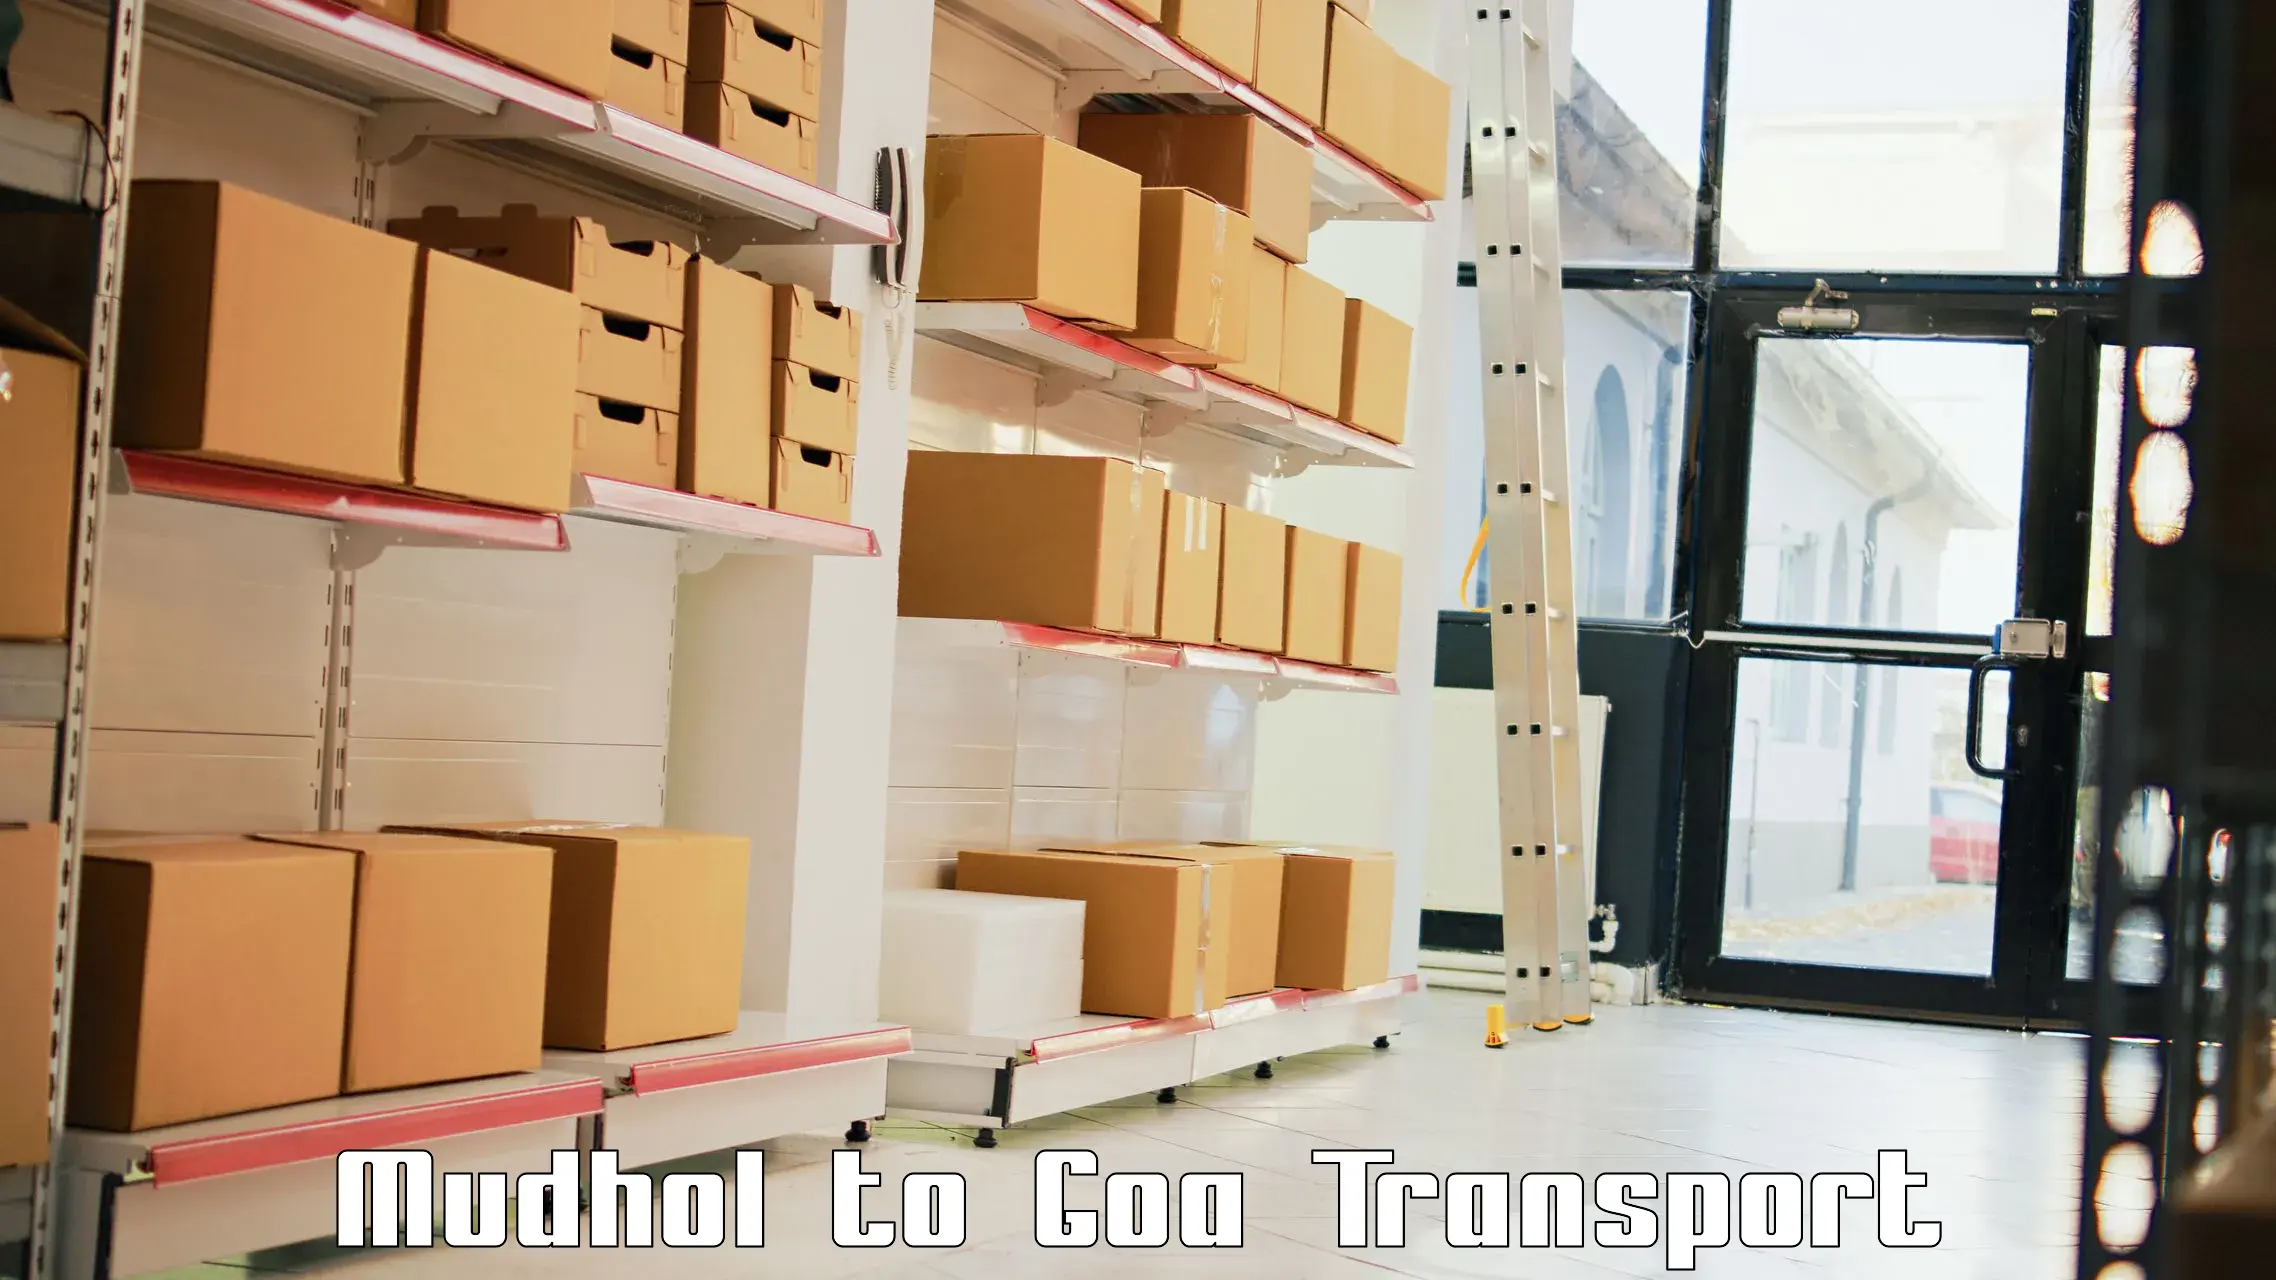 Transport in sharing Mudhol to Bicholim